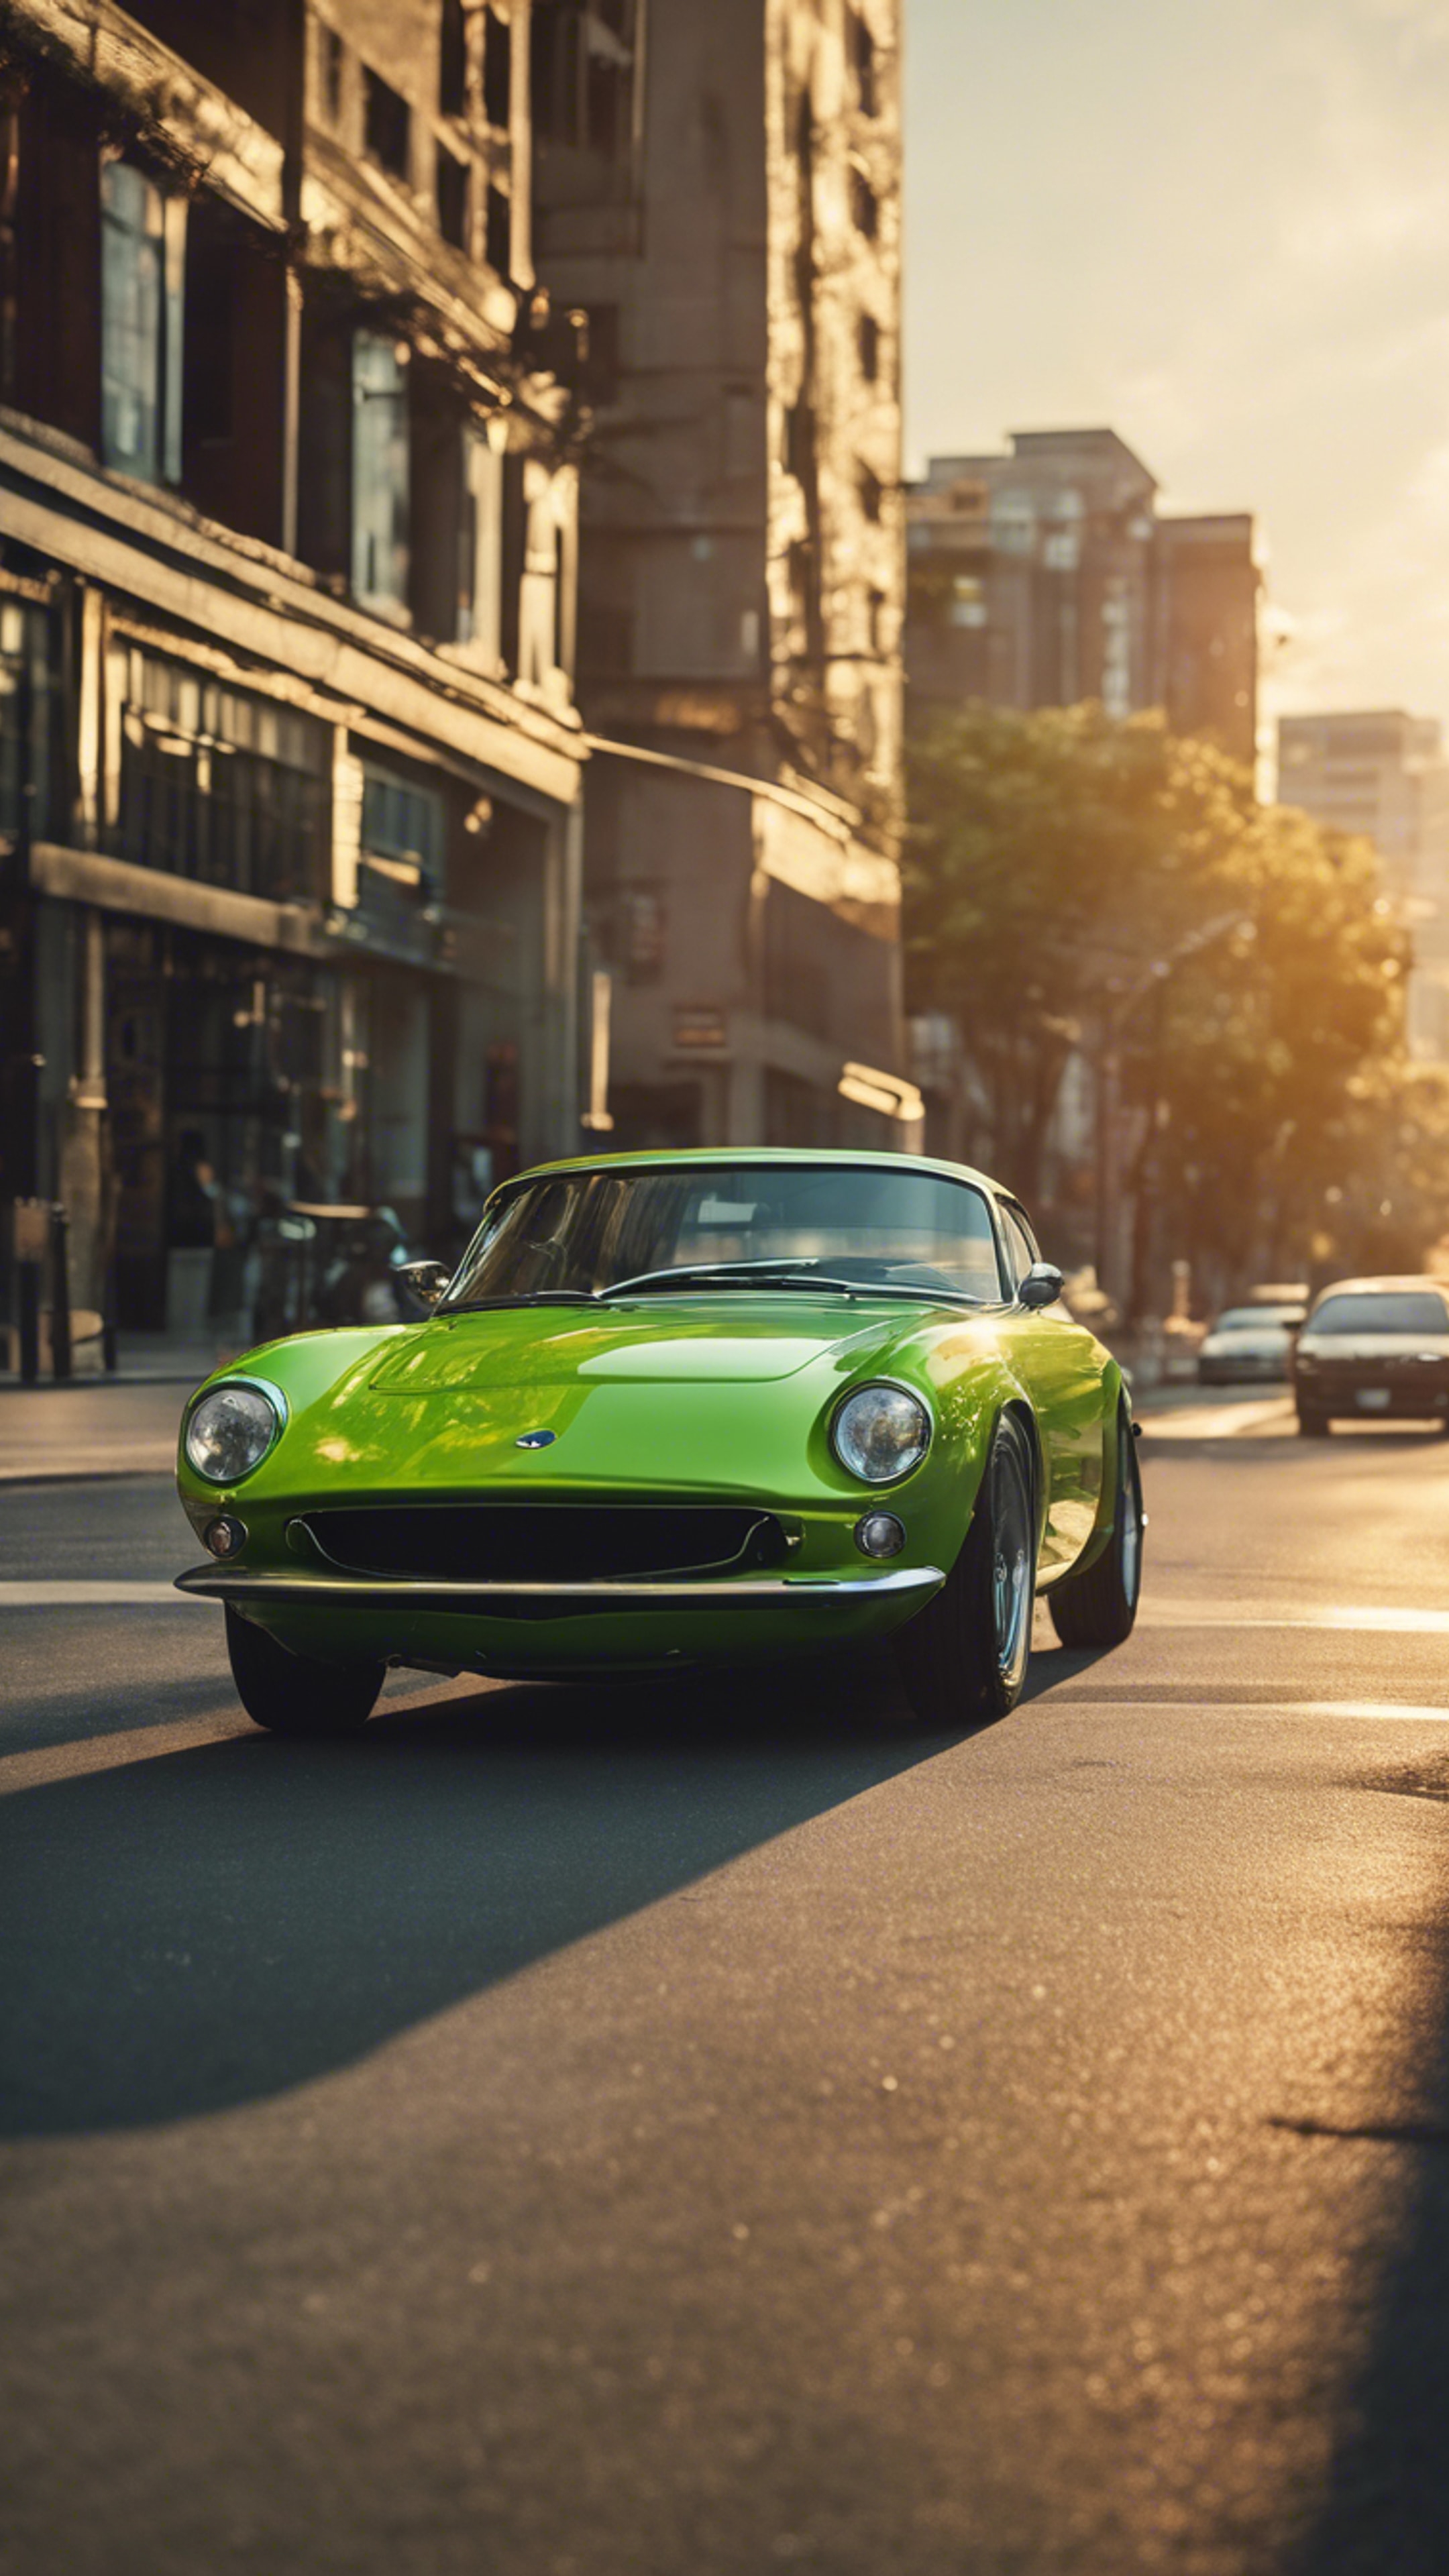 A lime green sports car speeding down a city street at sunset. 牆紙[650ecab6c10046e0a1d5]